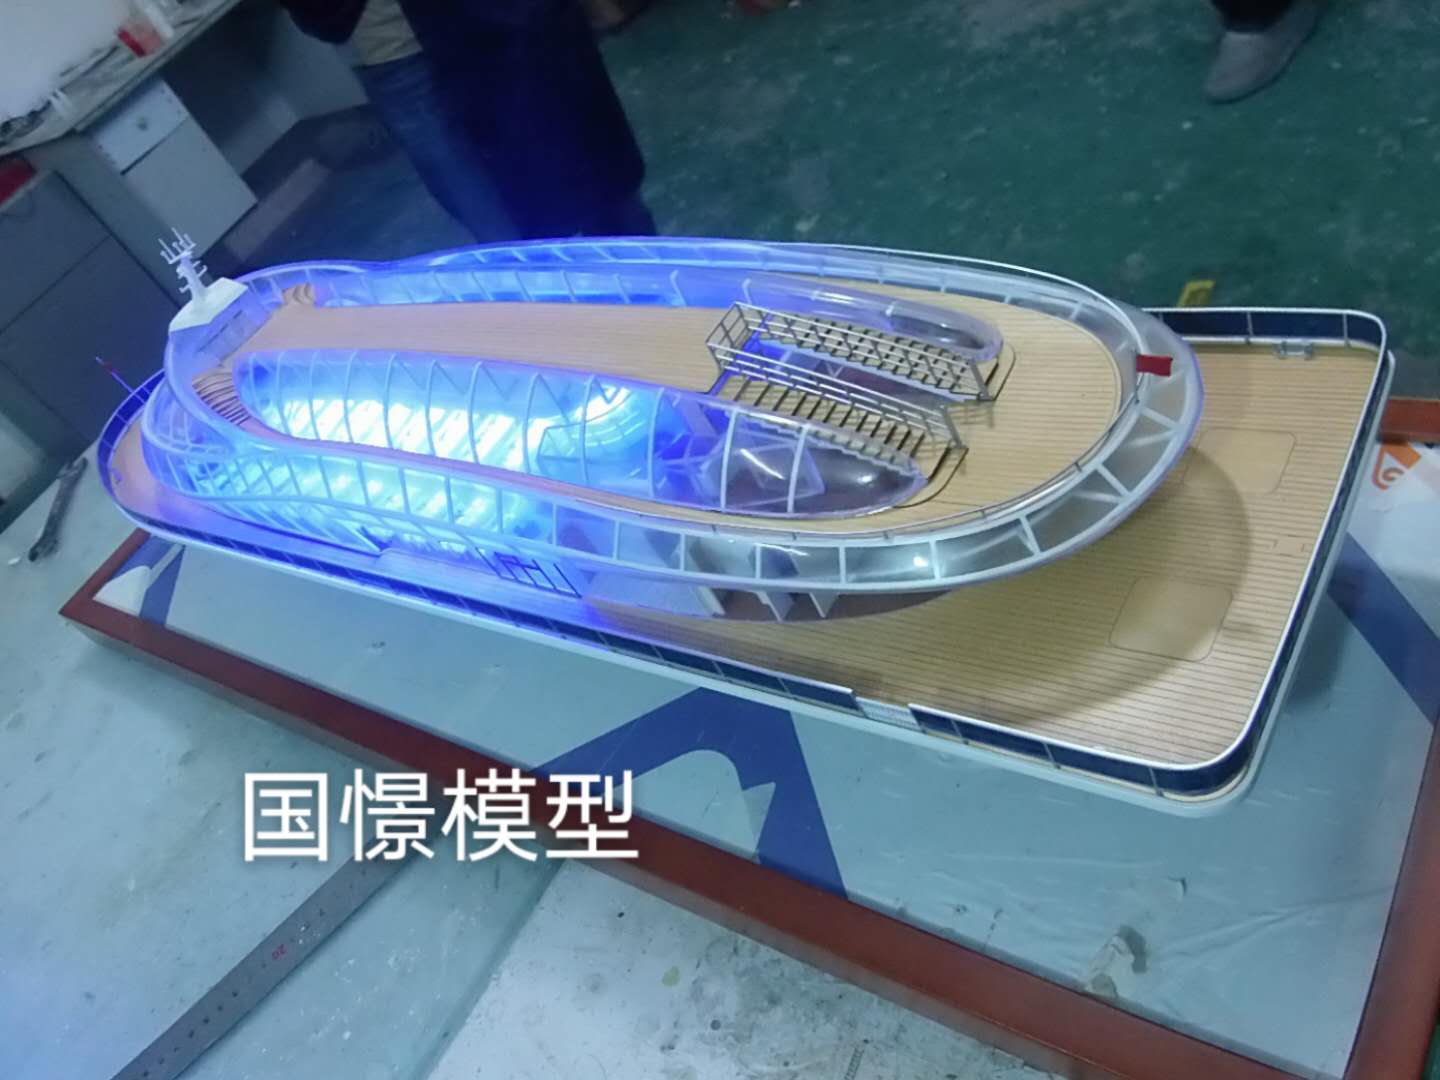 邳州市船舶模型